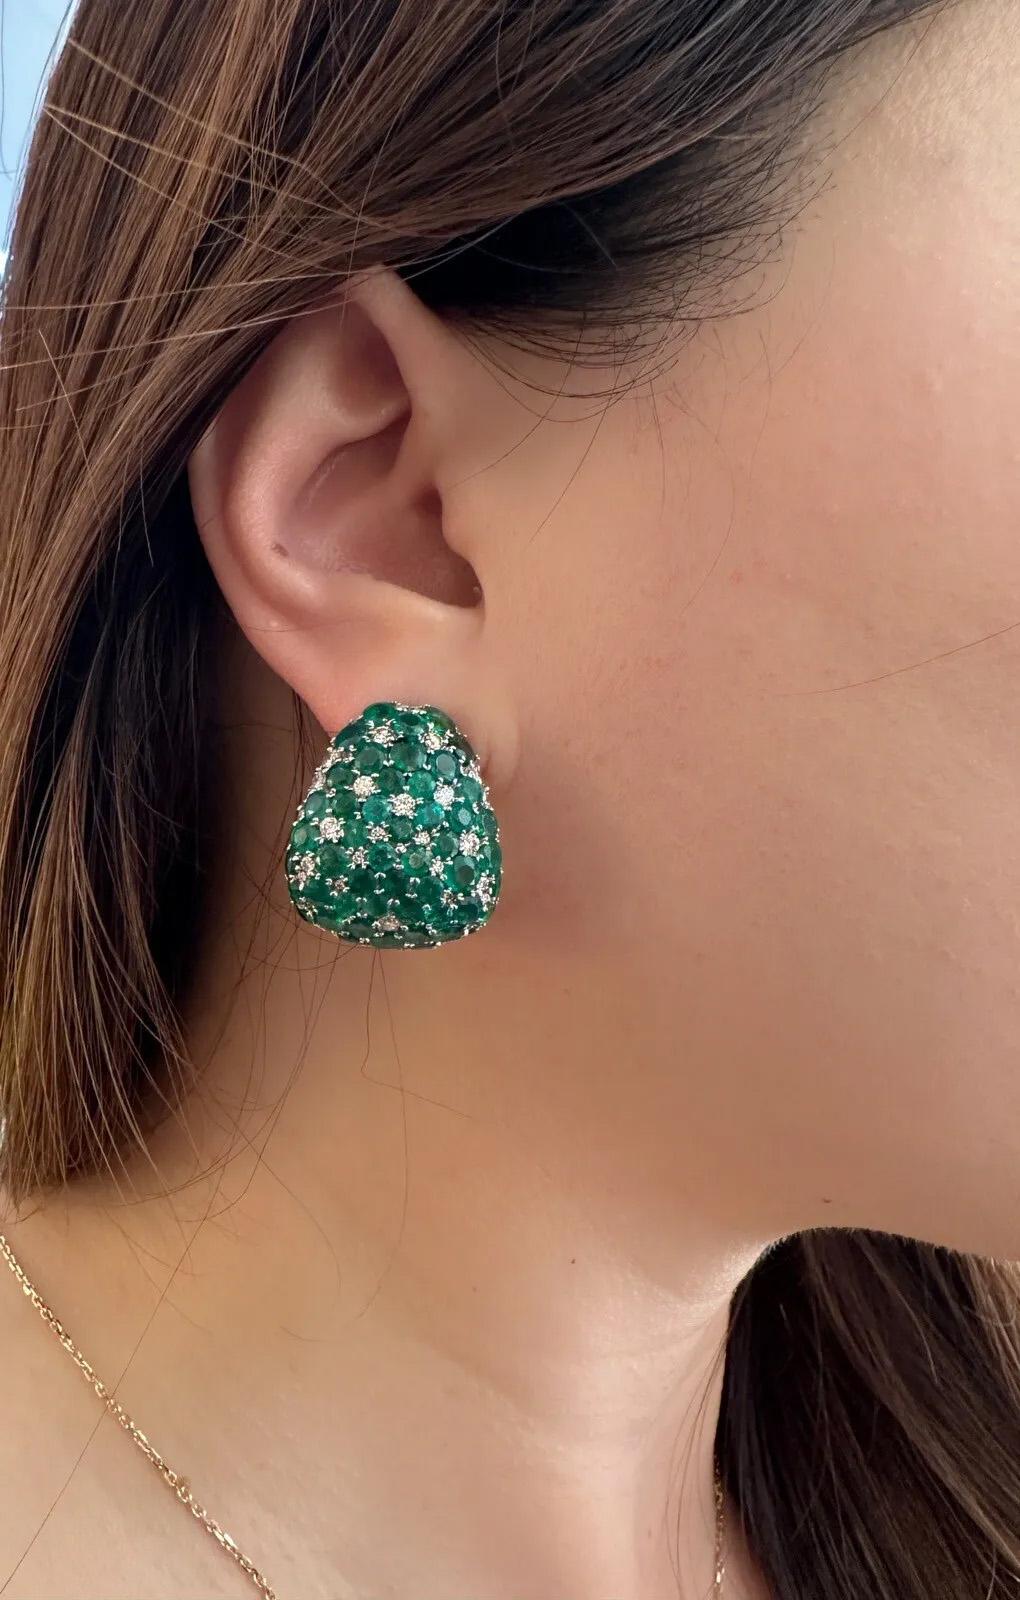 Große Smaragd- und Diamant-Halbring-Ohrringe 
in 18k Weißgold 

Smaragd- und Diamant-Ohrringe in dreieckigem Halbkreis-Design mit natürlichen runden Smaragden mit einem Gewicht von 16,52 Karat, besetzt mit runden Brillanten mit einem Gewicht von